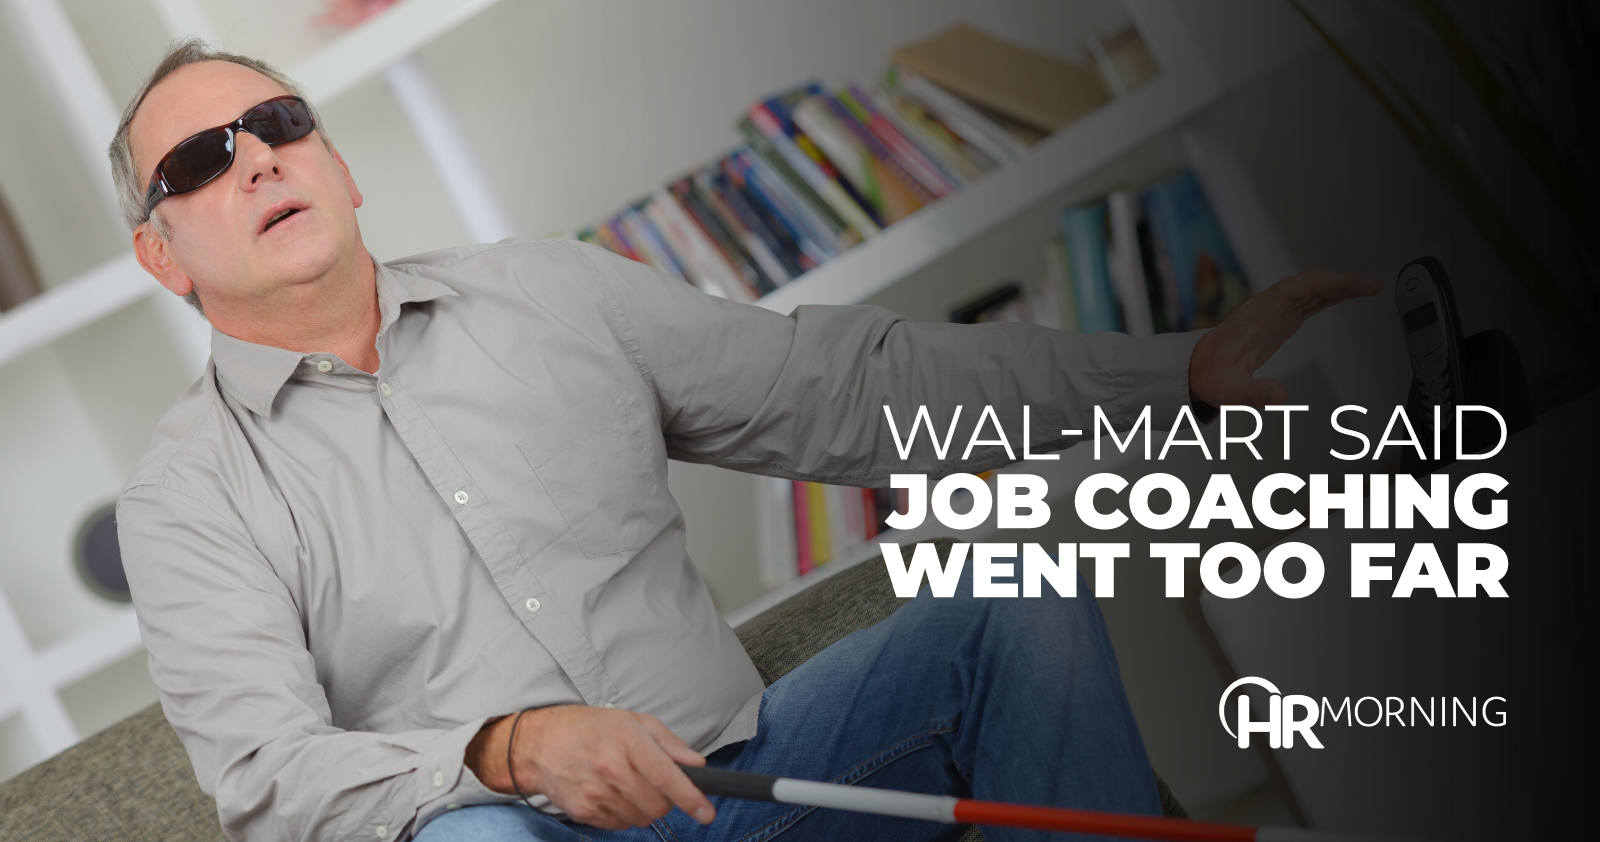 Wal-Mart Said Job Coaching WentT oo Far